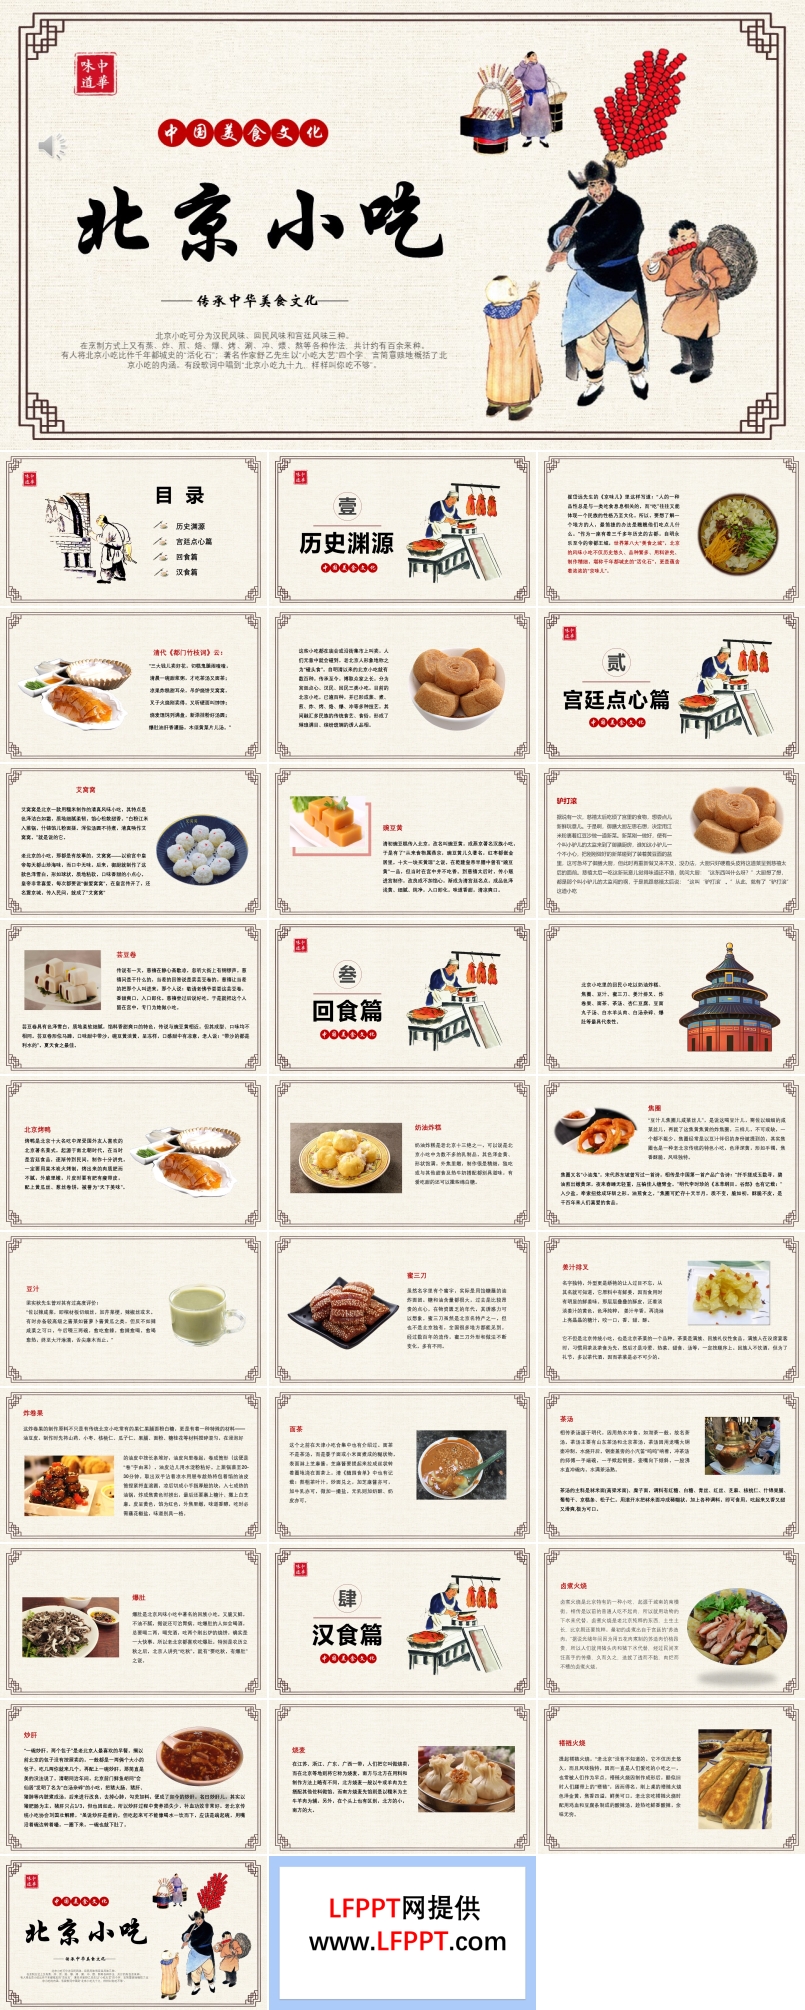 北京小吃中国美食文化介绍宣传推广PPT模板